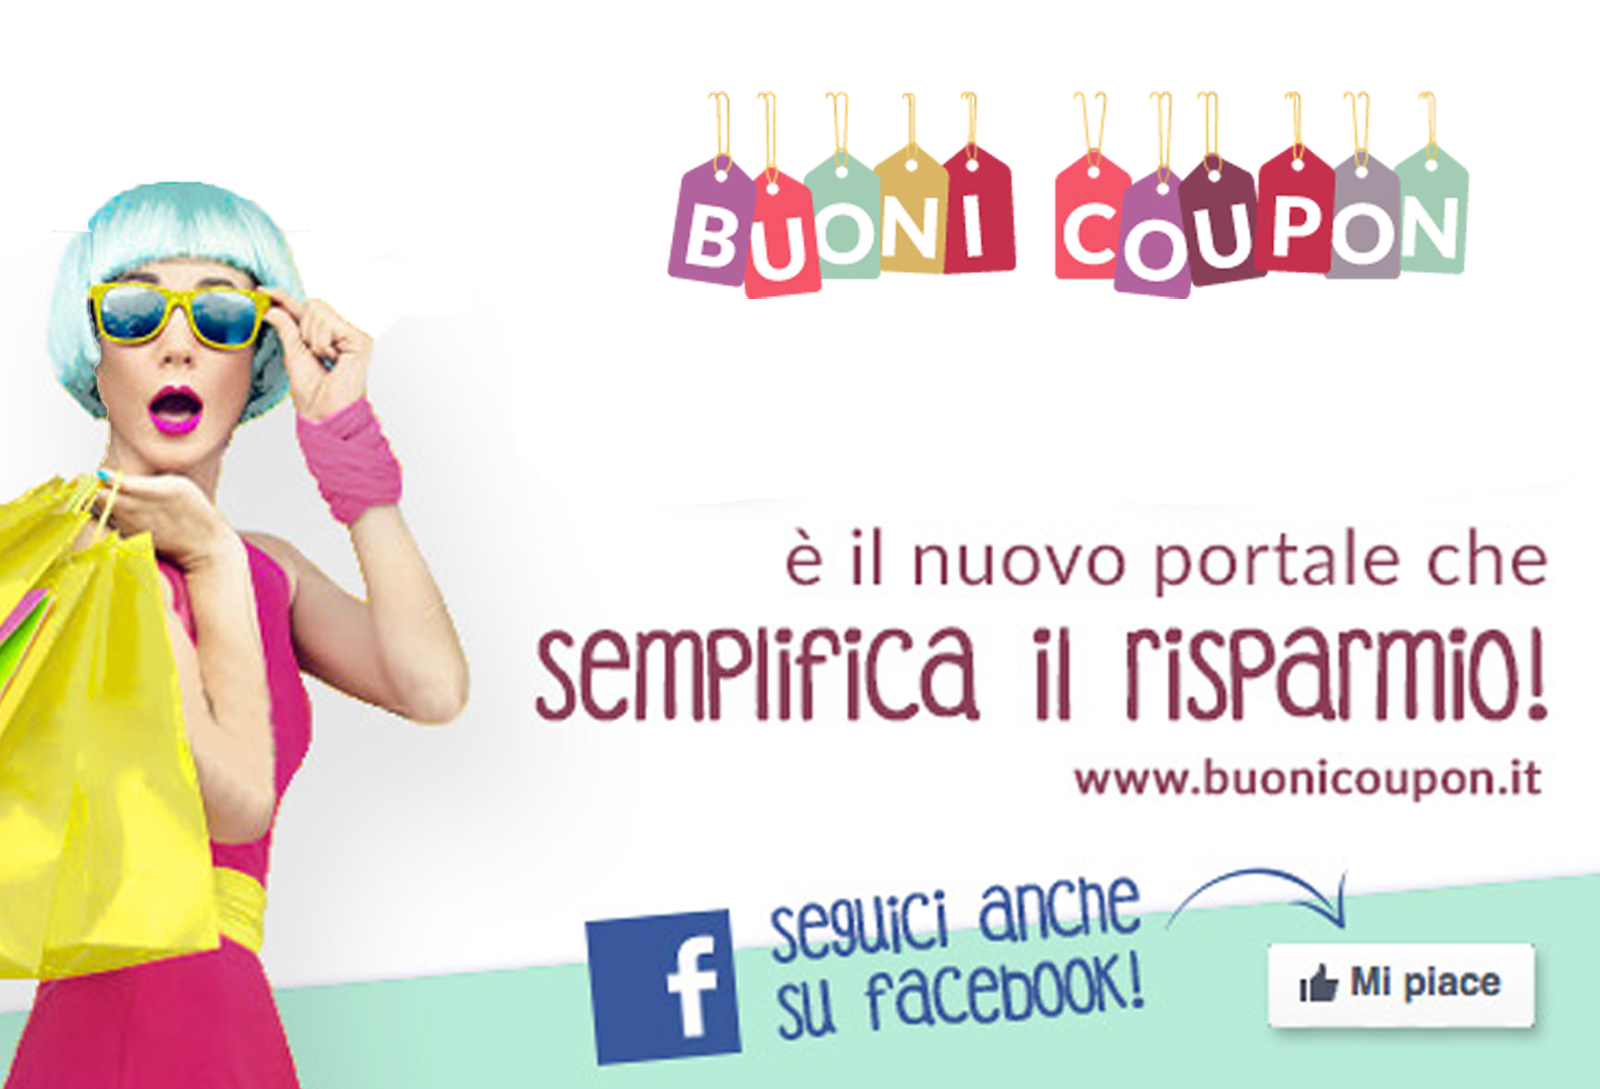 www.buonicoupon.it